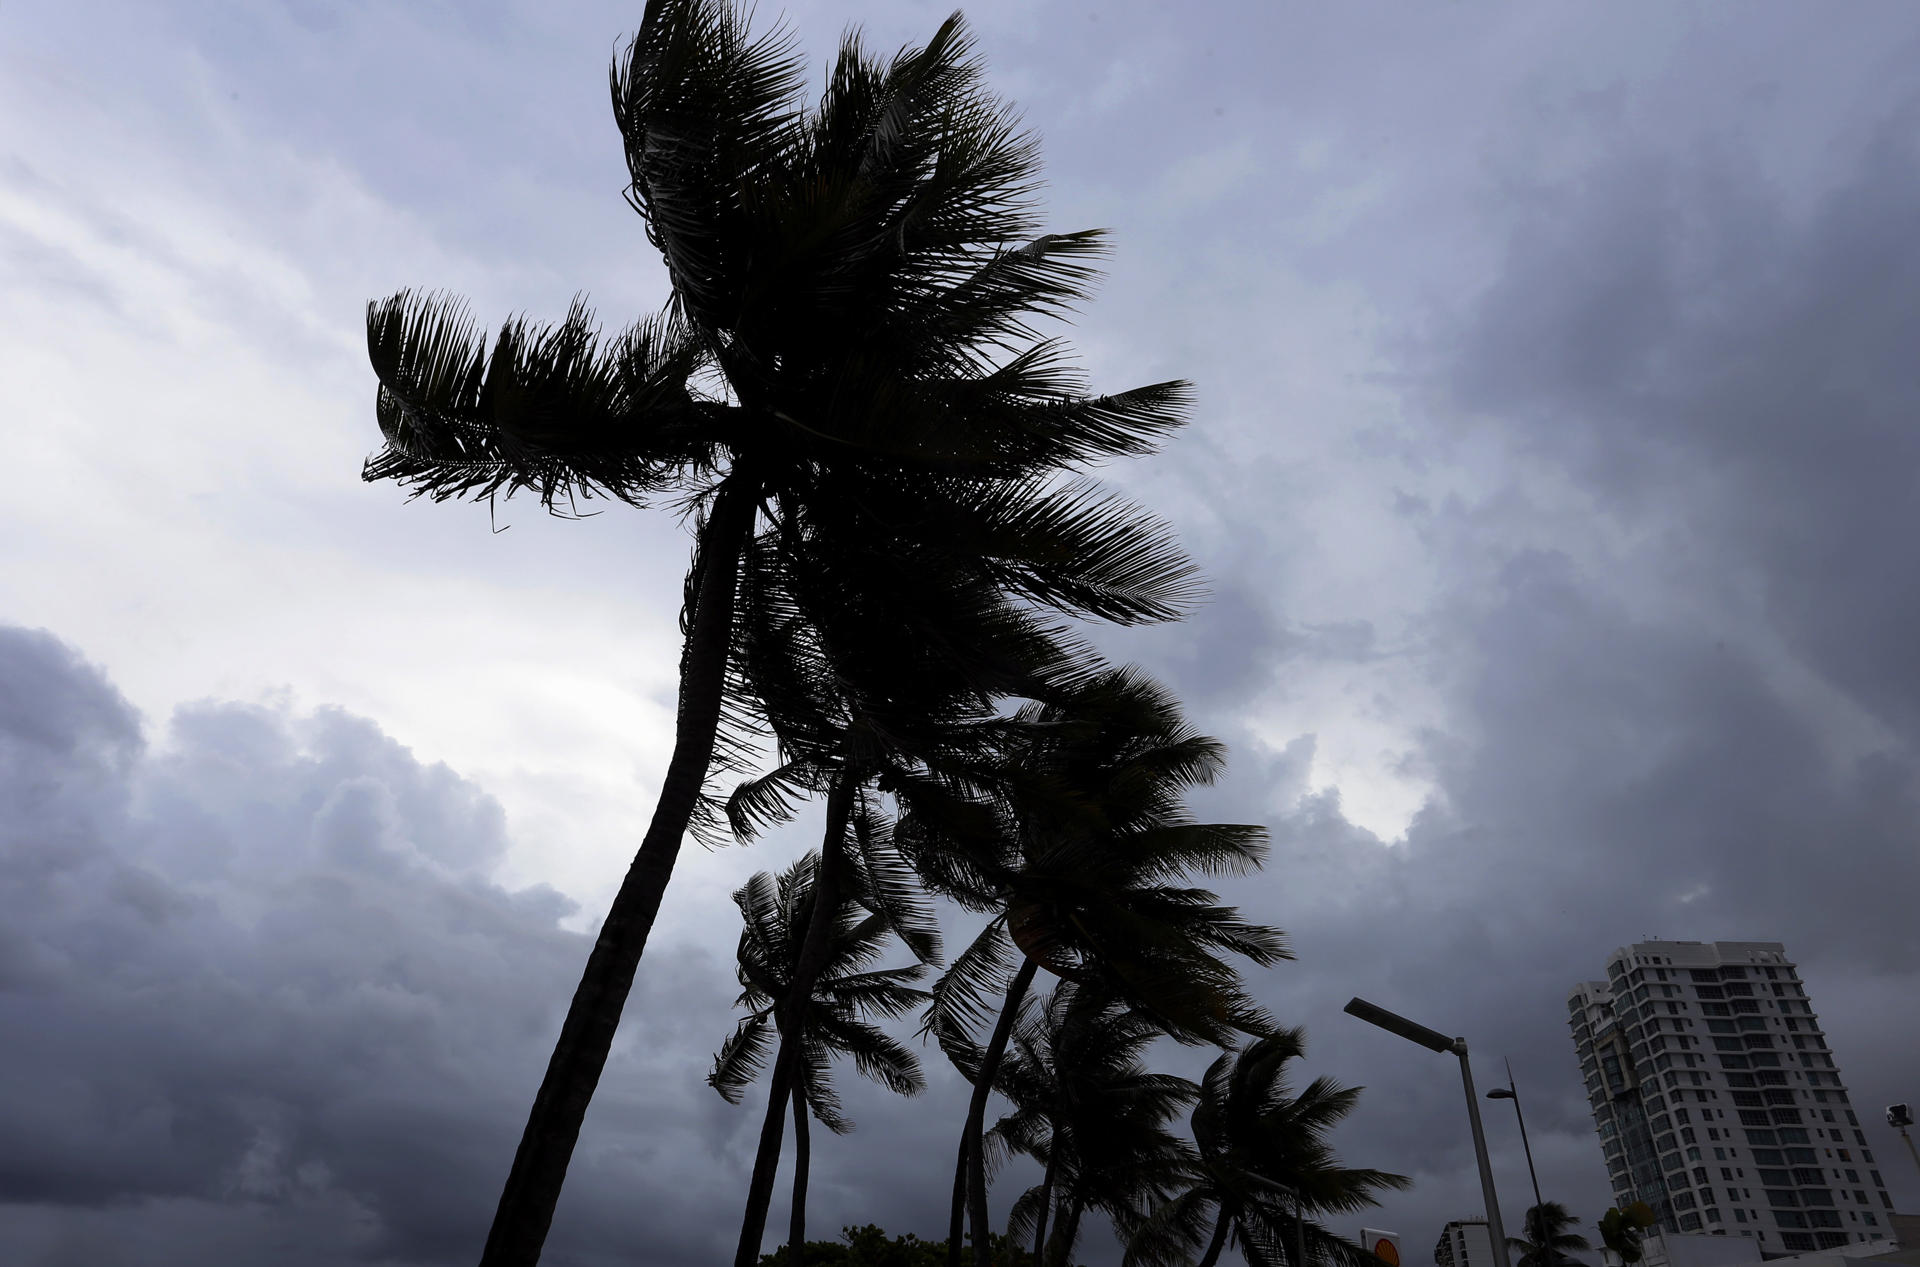 Prevén un aumento de huracanes en el Atlántico debido a las altas temperaturas del mar